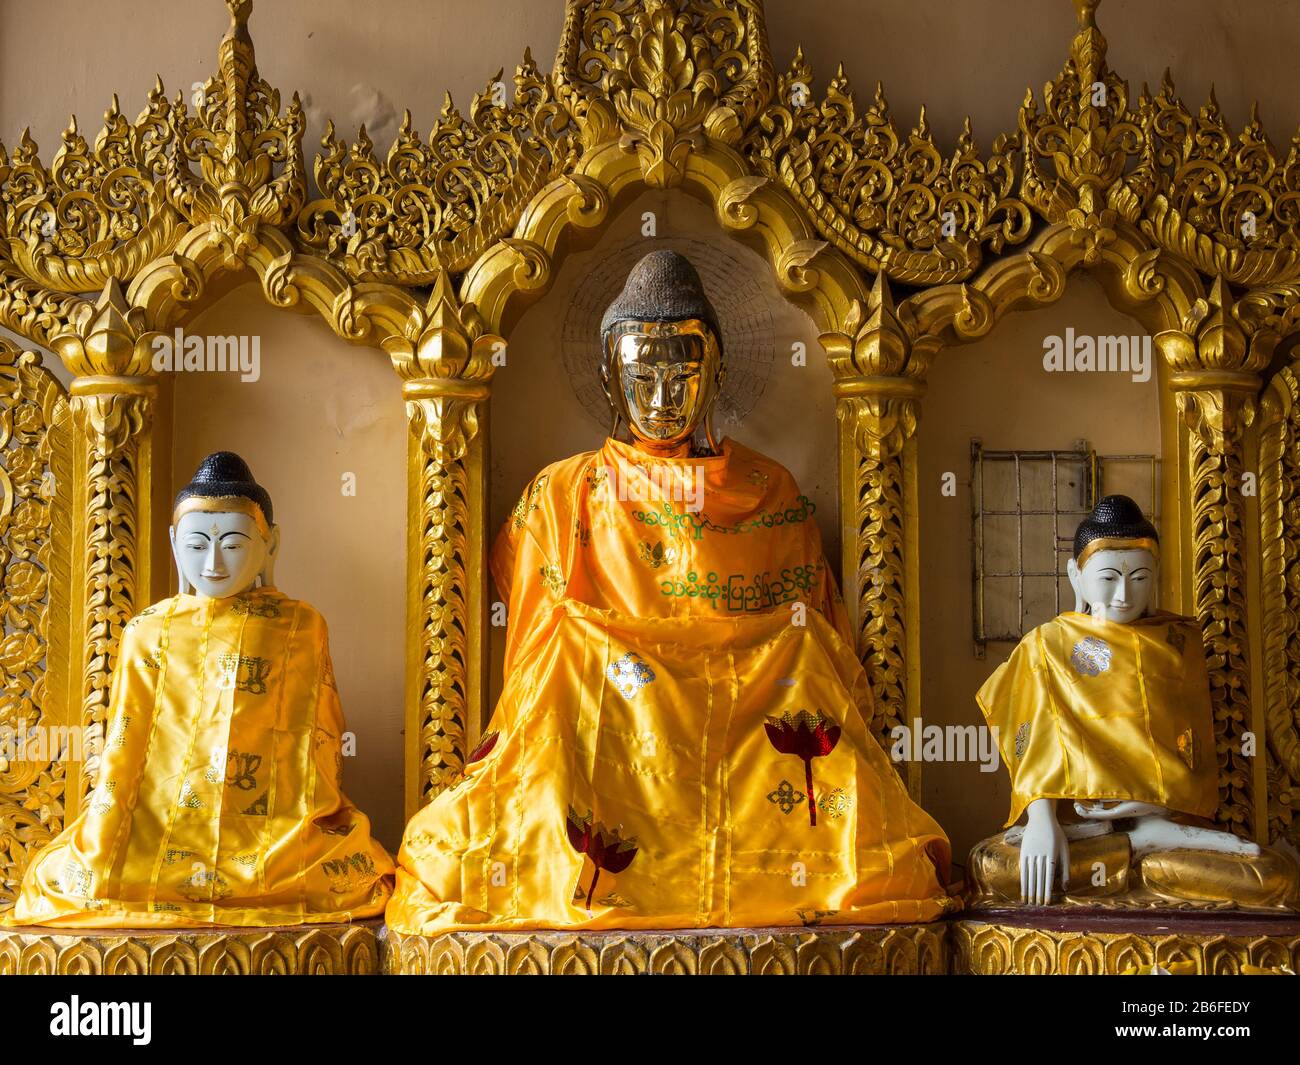 Buddha statues, Shwedagon Pagoda, Yangon, Myanmar Stock Photo